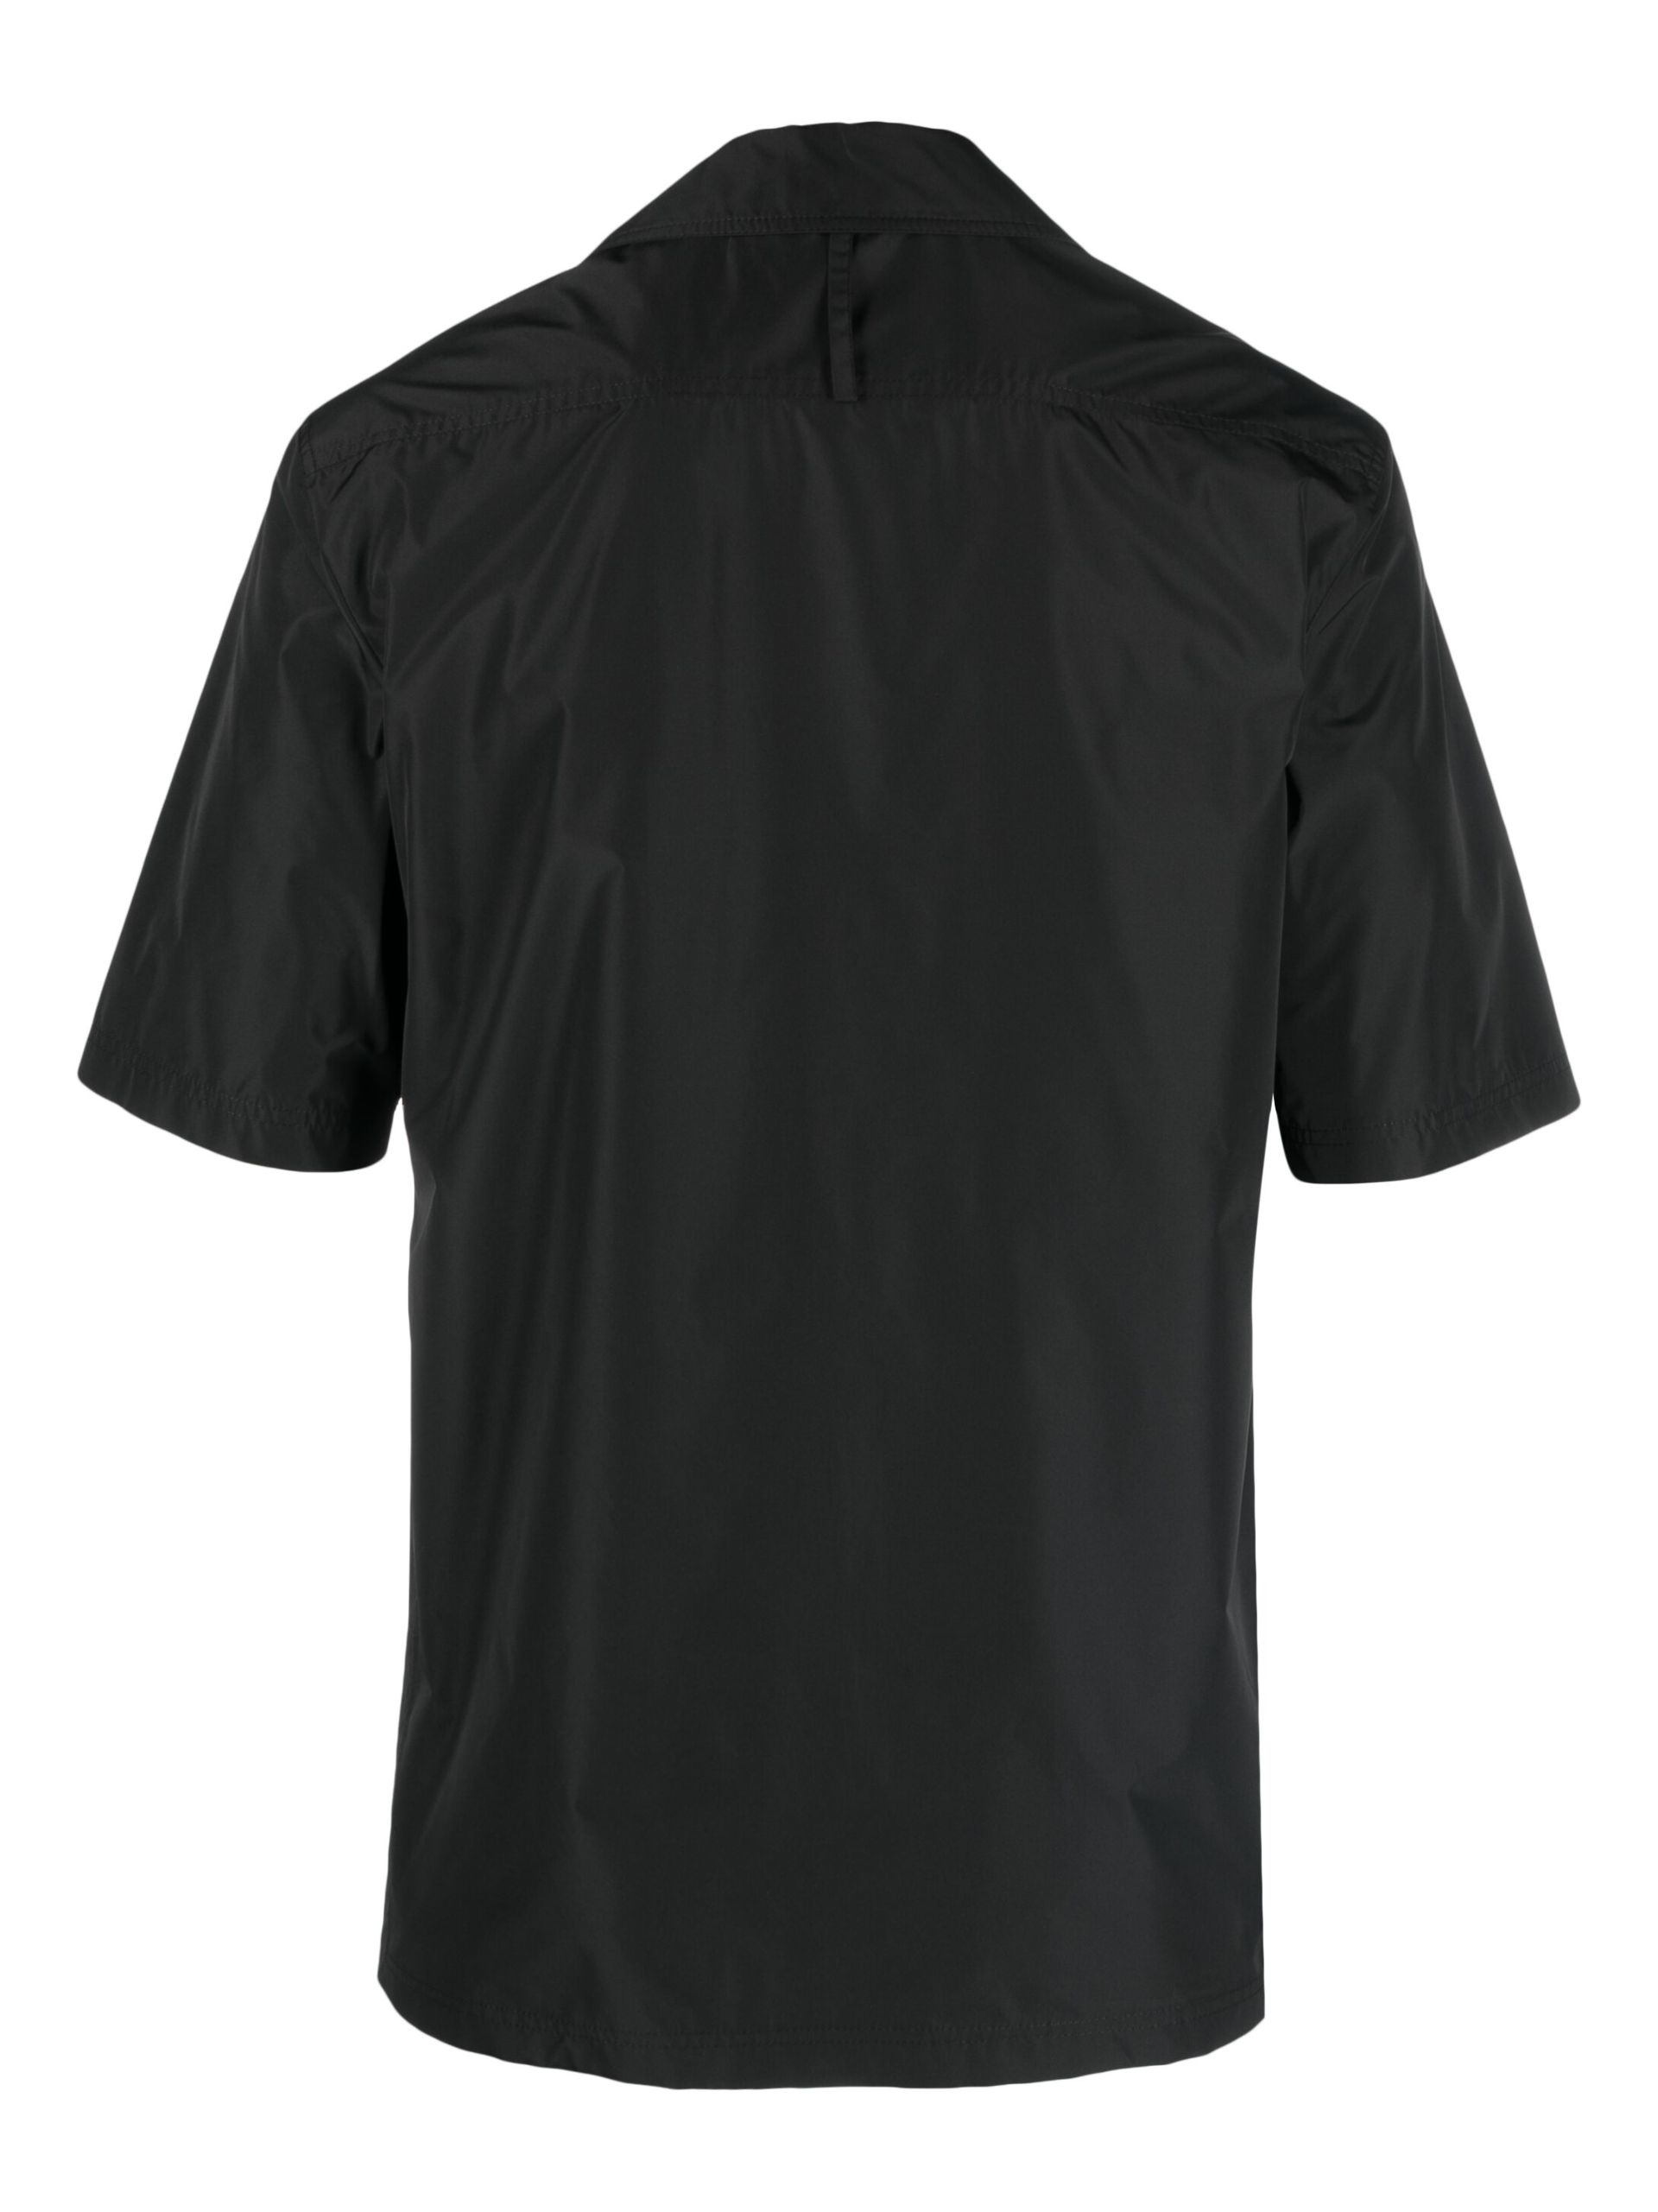 Black Short-Sleeve Button-Up Shirt - 2